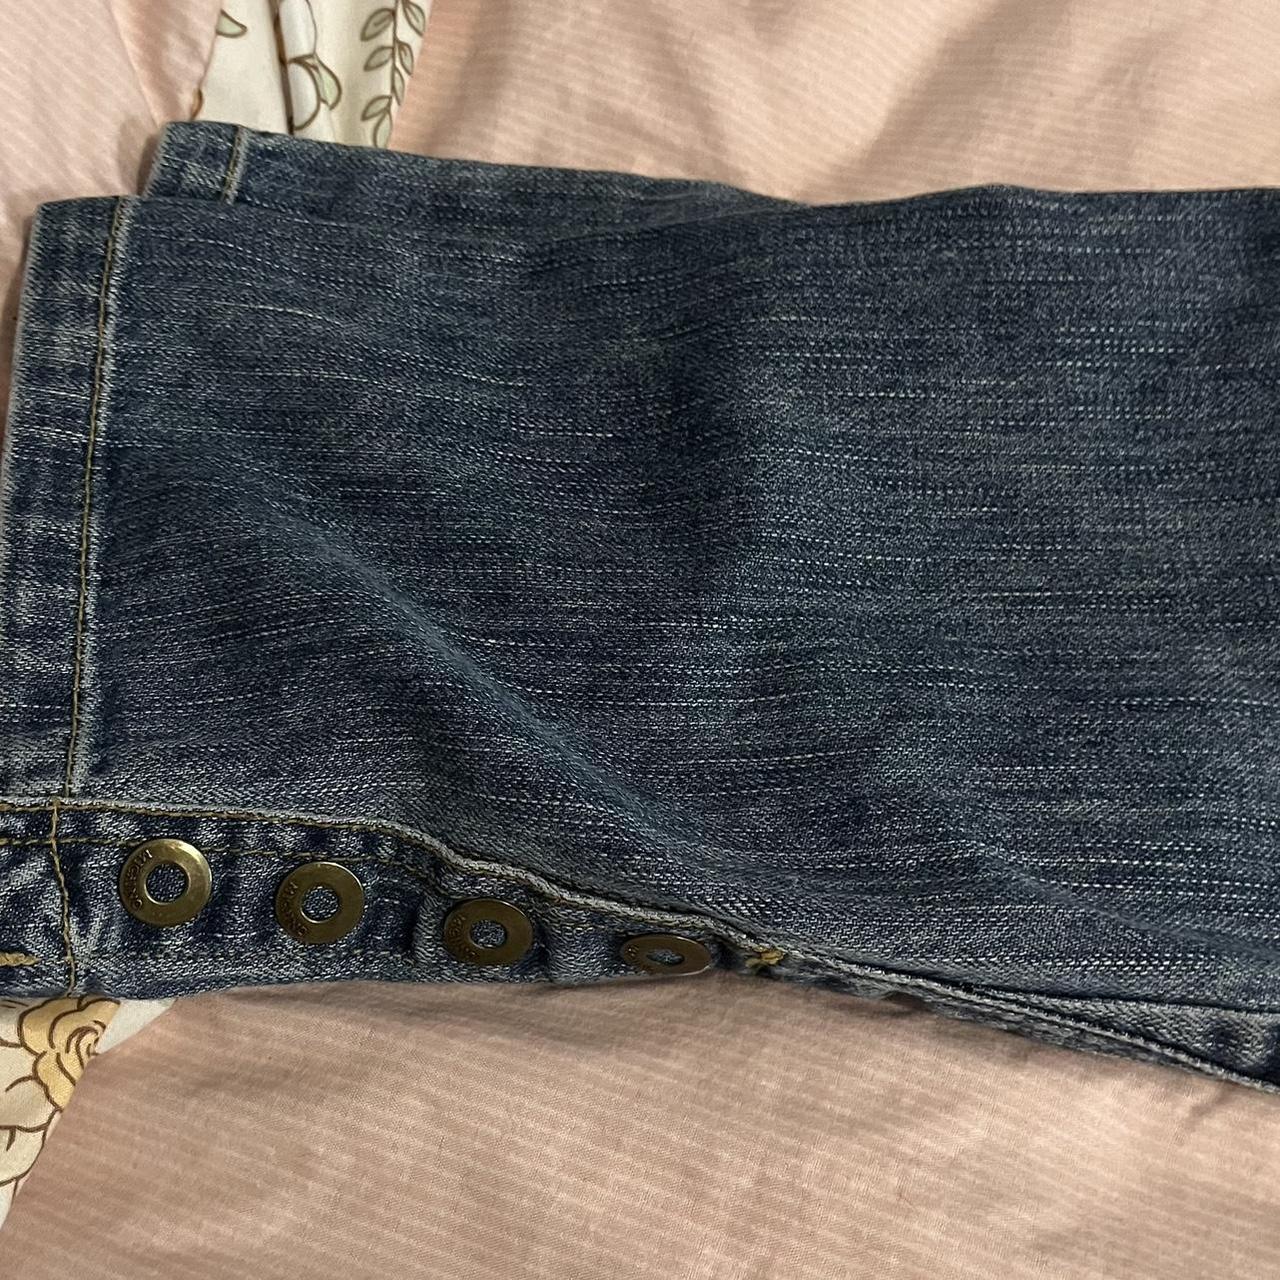 Vintage y2k embroidered straight leg jeans SIZE:... - Depop